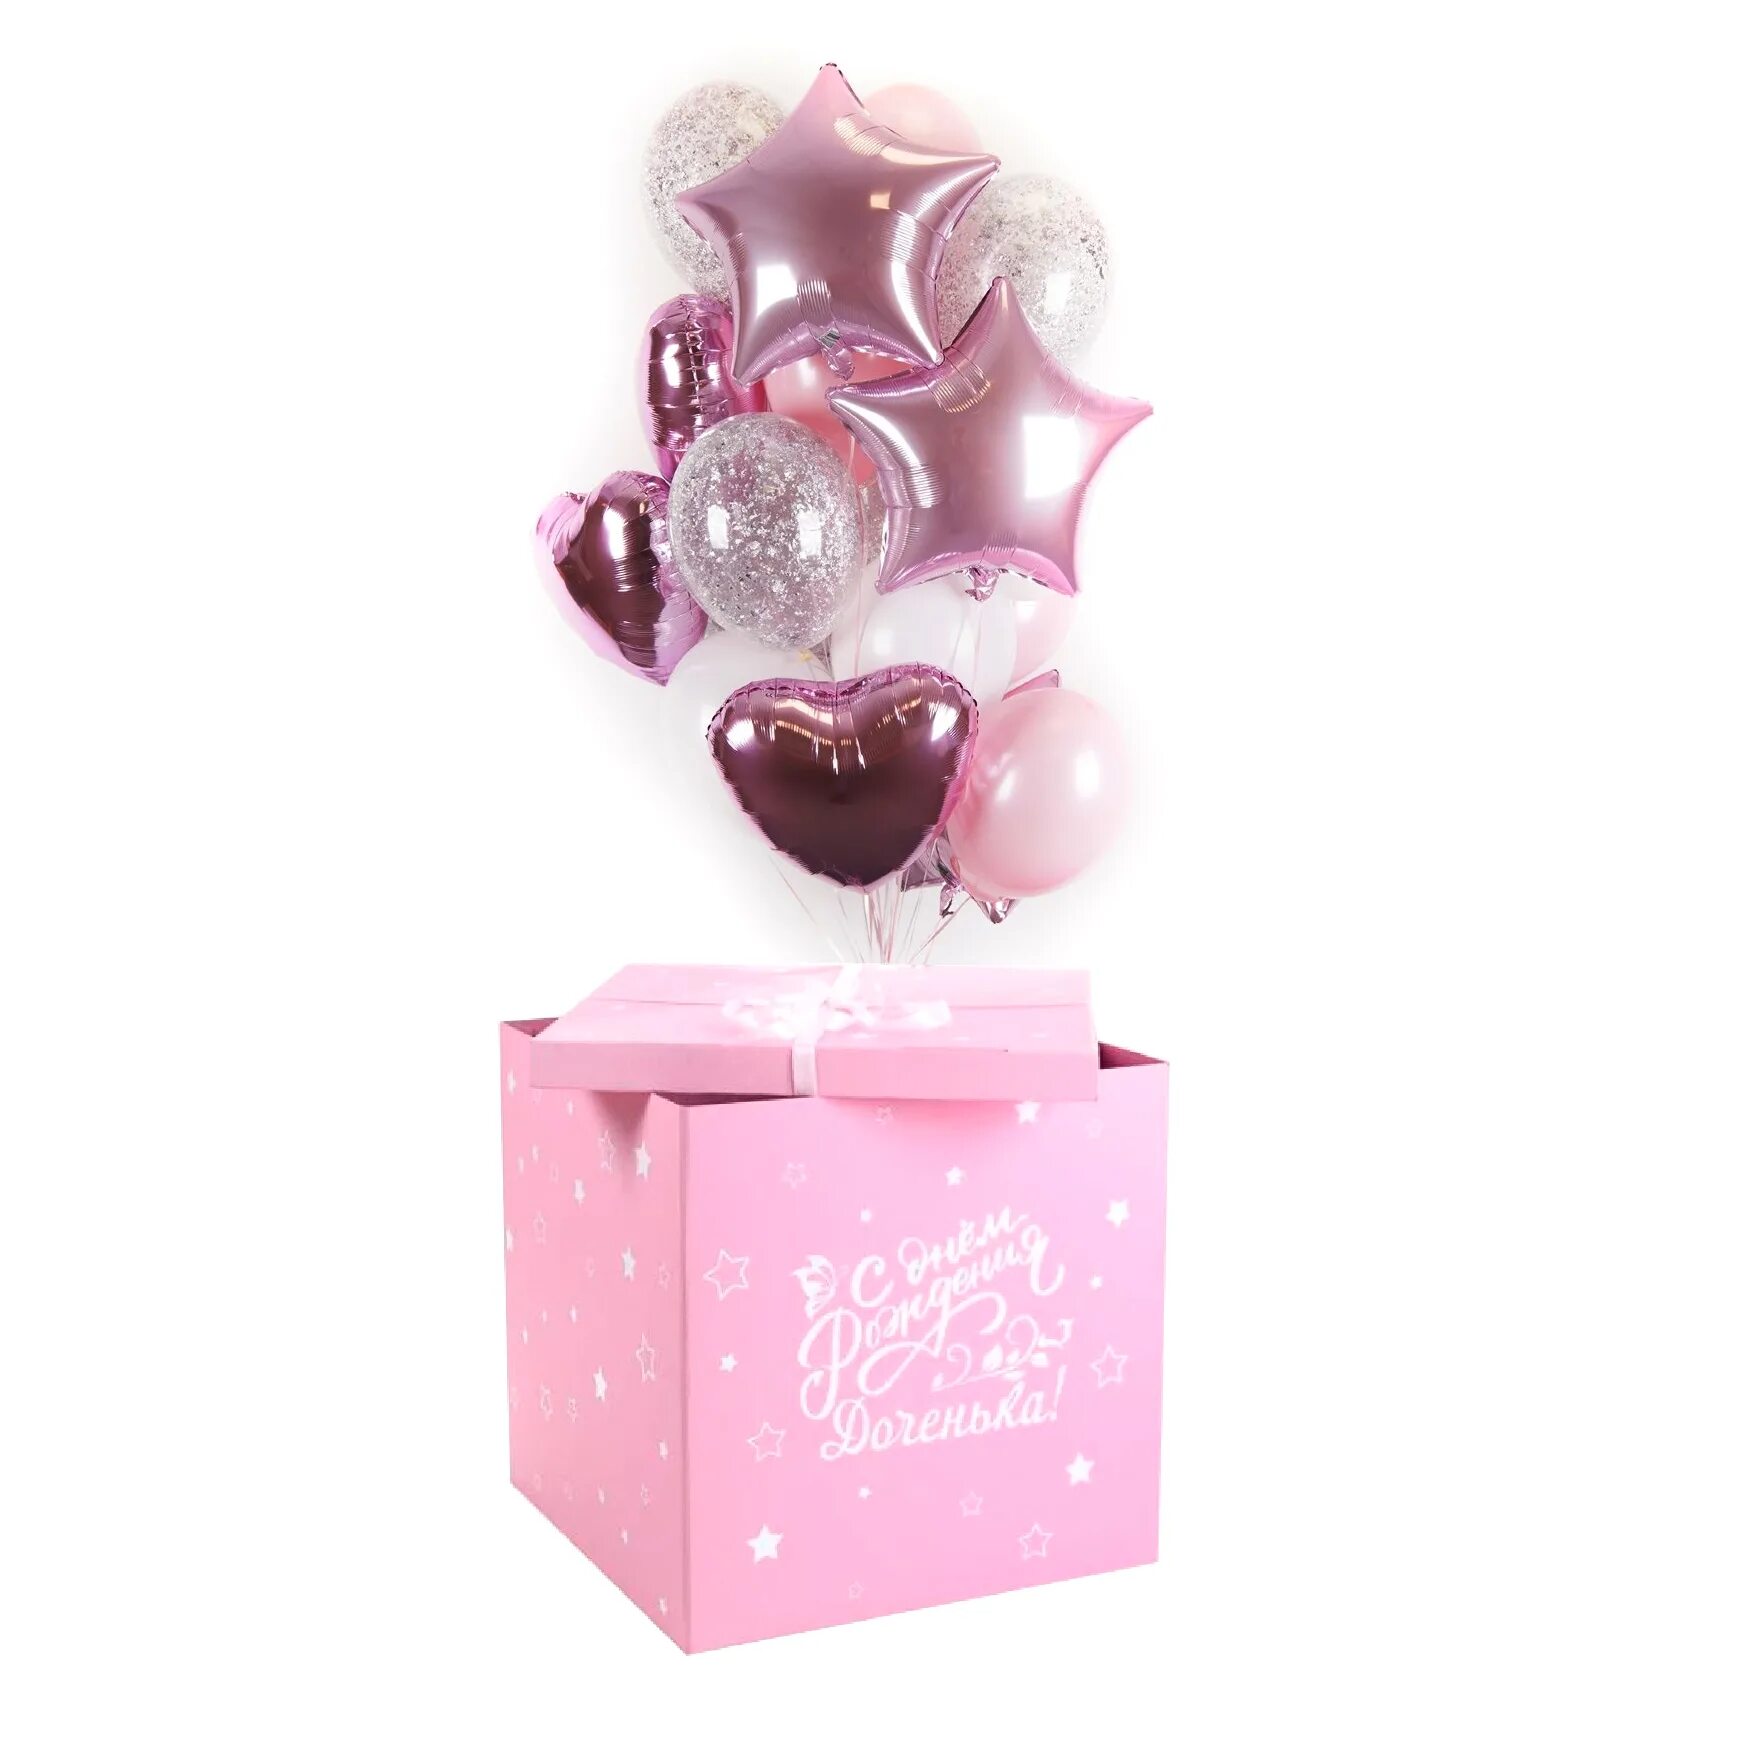 Шары в коробке на день рождения. Коробка с шарами. Коробка с шарами для девочки. Коробка сюрприз с шарами для девочки. Розовая коробка сюрприз с шарами.